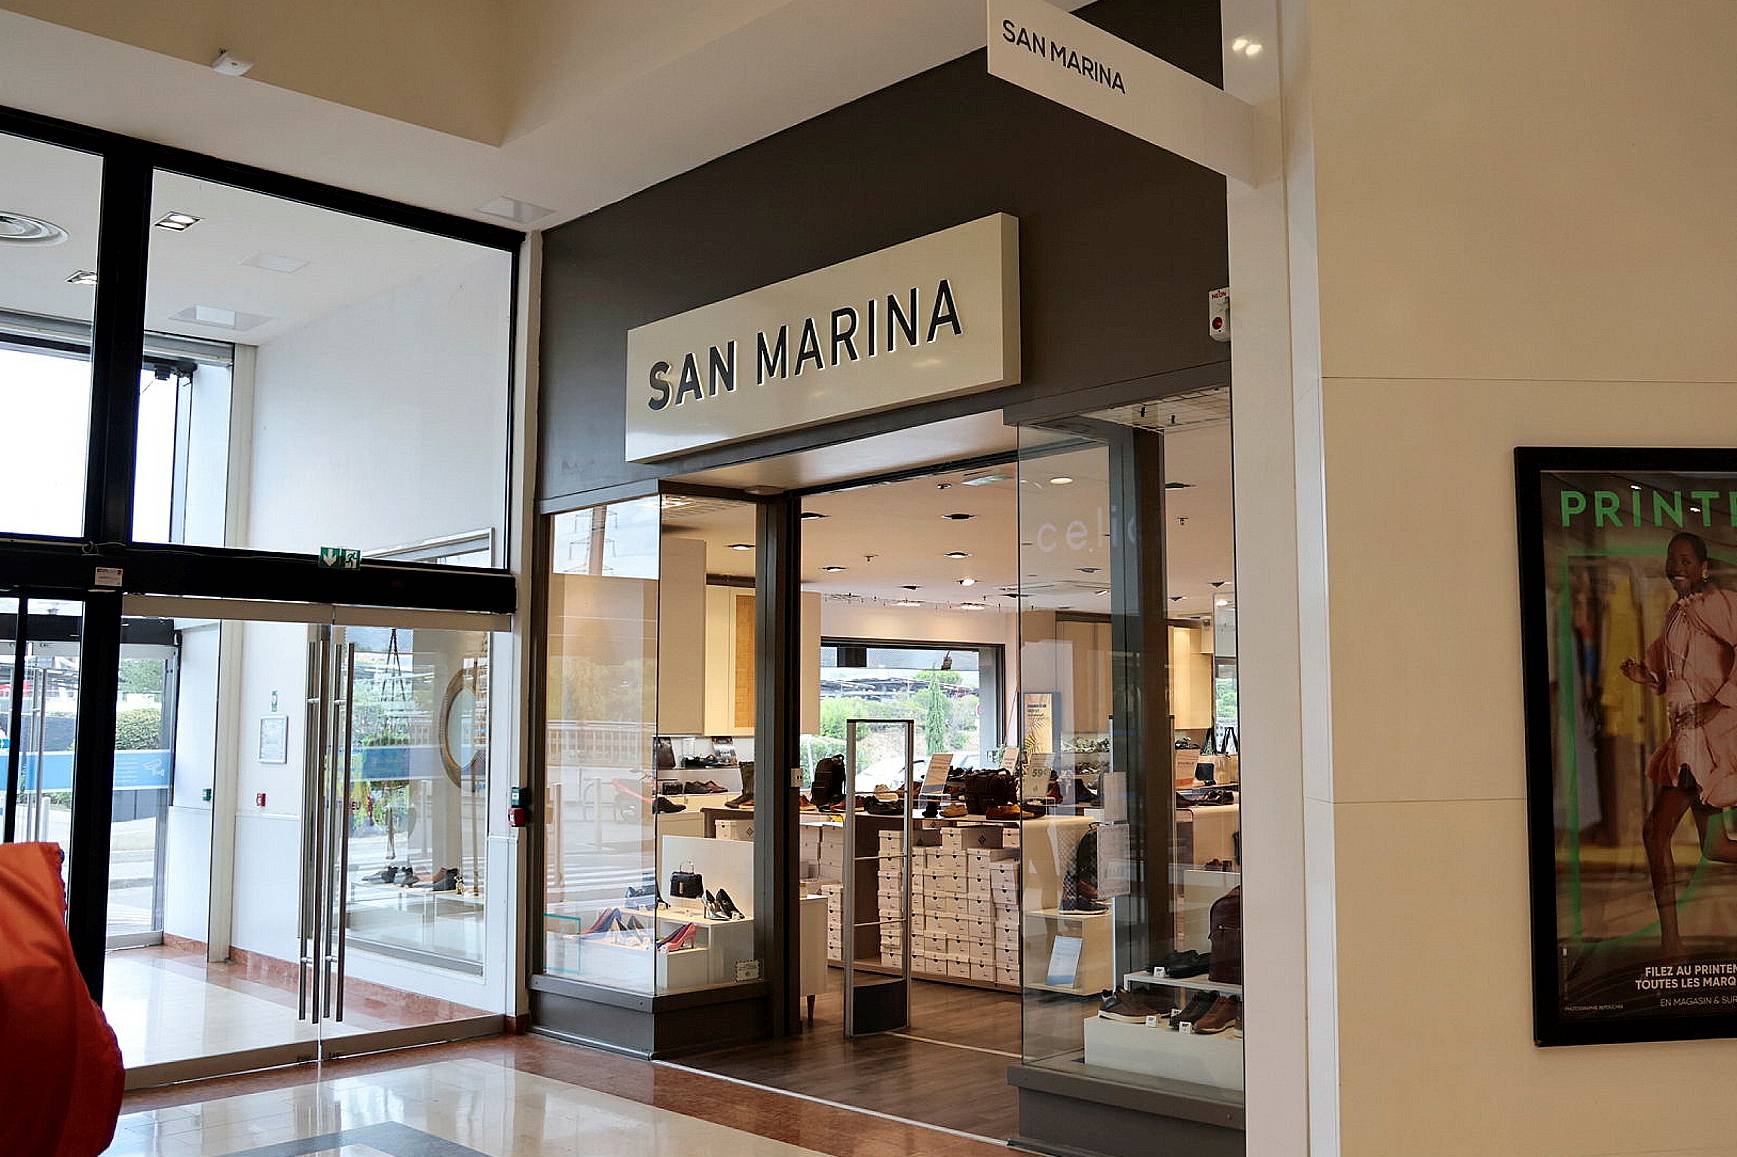 Le chausseur provençal San Marina pourrait être placé en liquidation judiciaire faute d'un repreneur